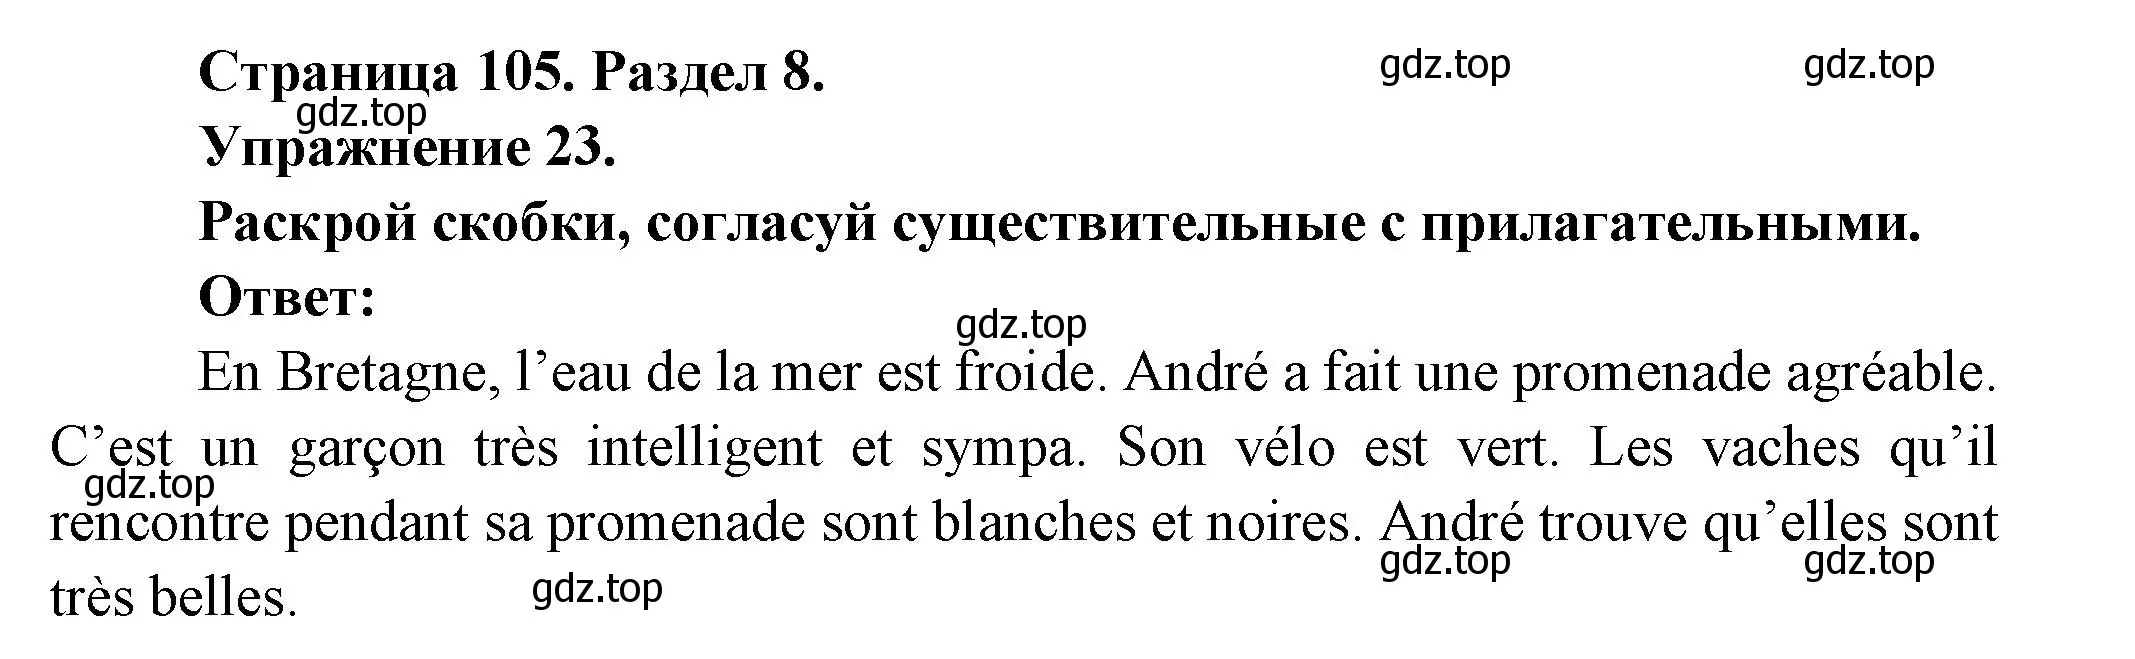 Решение номер 23 (страница 105) гдз по французскому языку 5 класс Береговская, Белосельская, учебник 2 часть